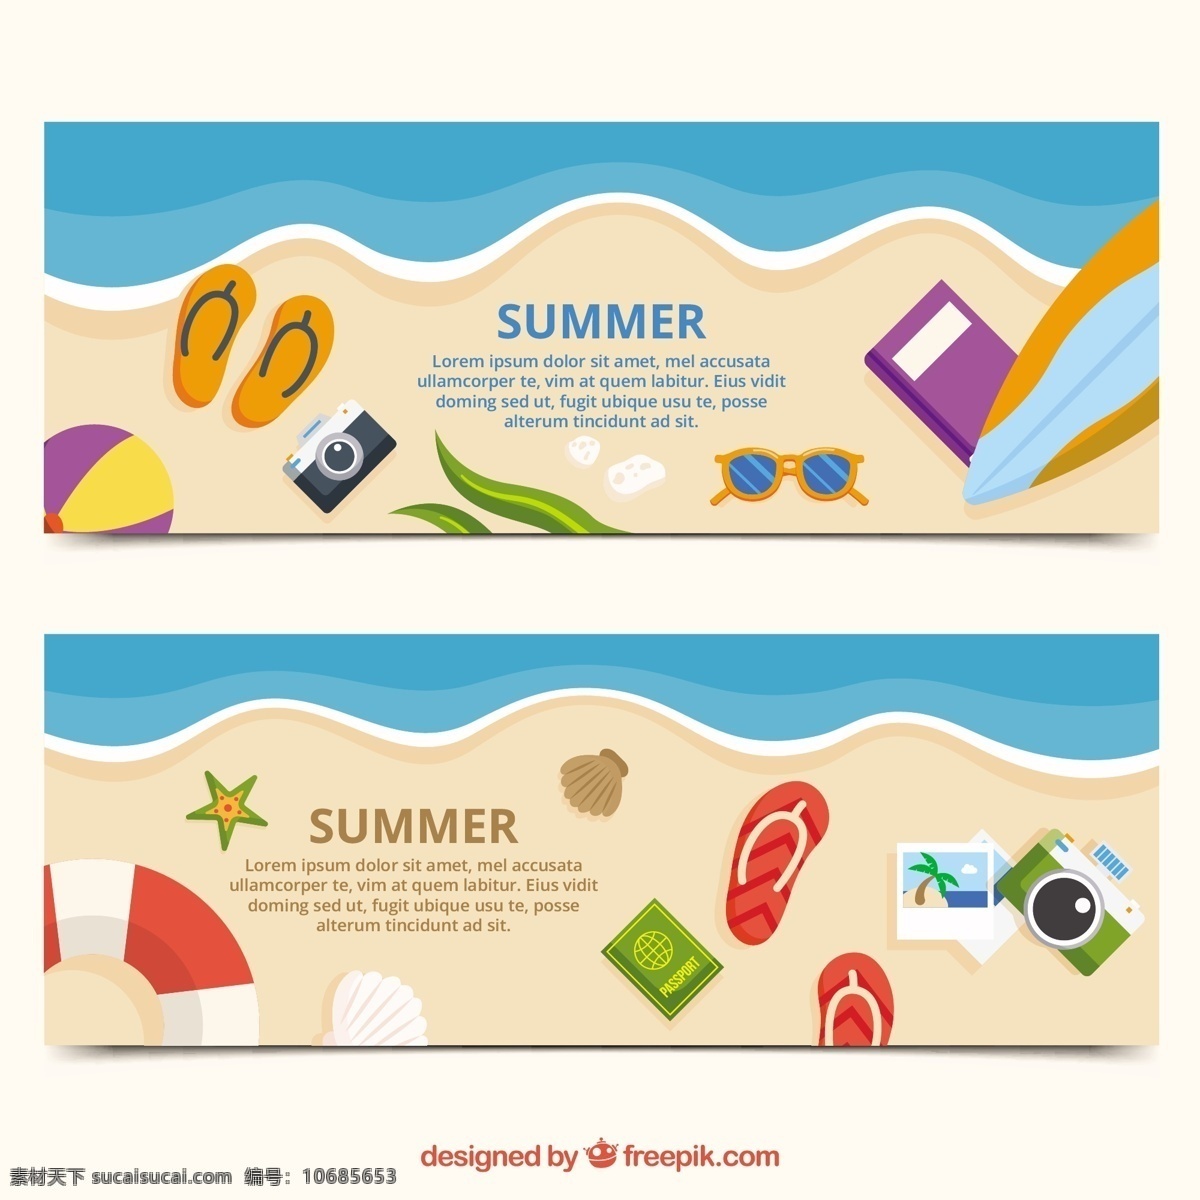 夏日 旗帜 沙滩 横幅 夏季 相机 海 海滩 颜色 假日 公寓 元素 平面设计 度假 夏季海滩 季节 对象 项目 触发器 翻转